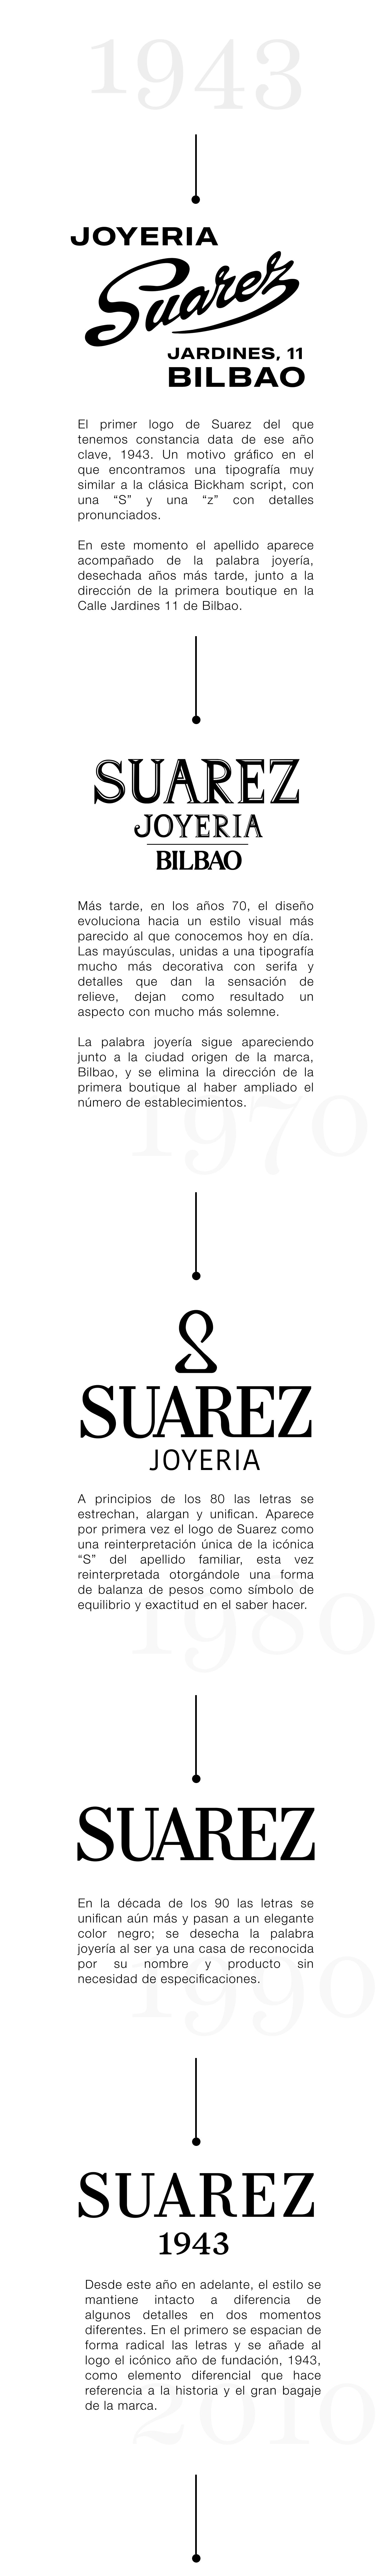 Logo Suarez 